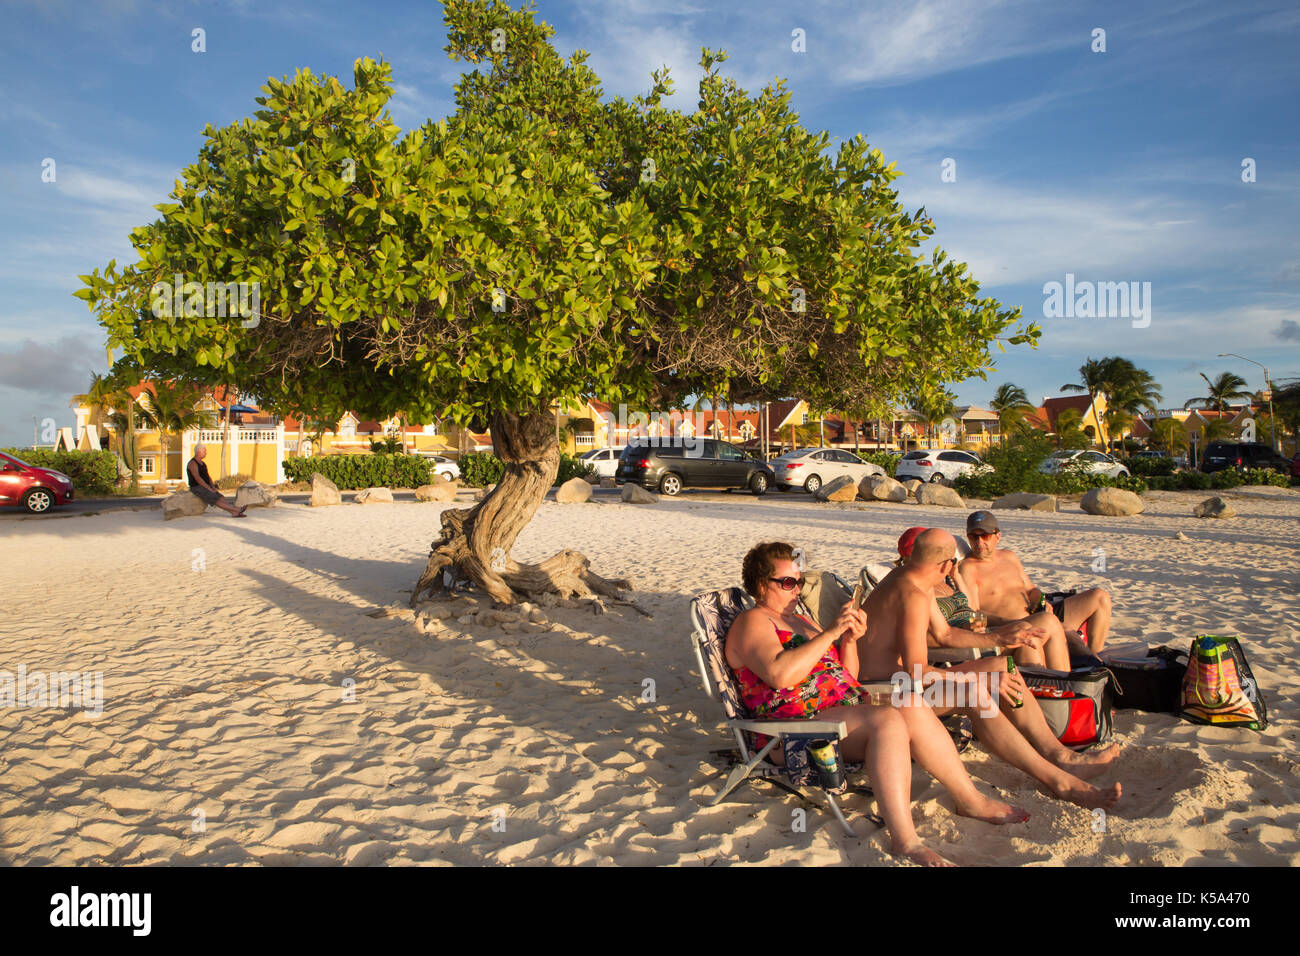 Eagle beach, Aruba - 15 marzo 2017: vista di Eagle beach, aruba al tramonto con divi divi tree e turisti. Foto Stock